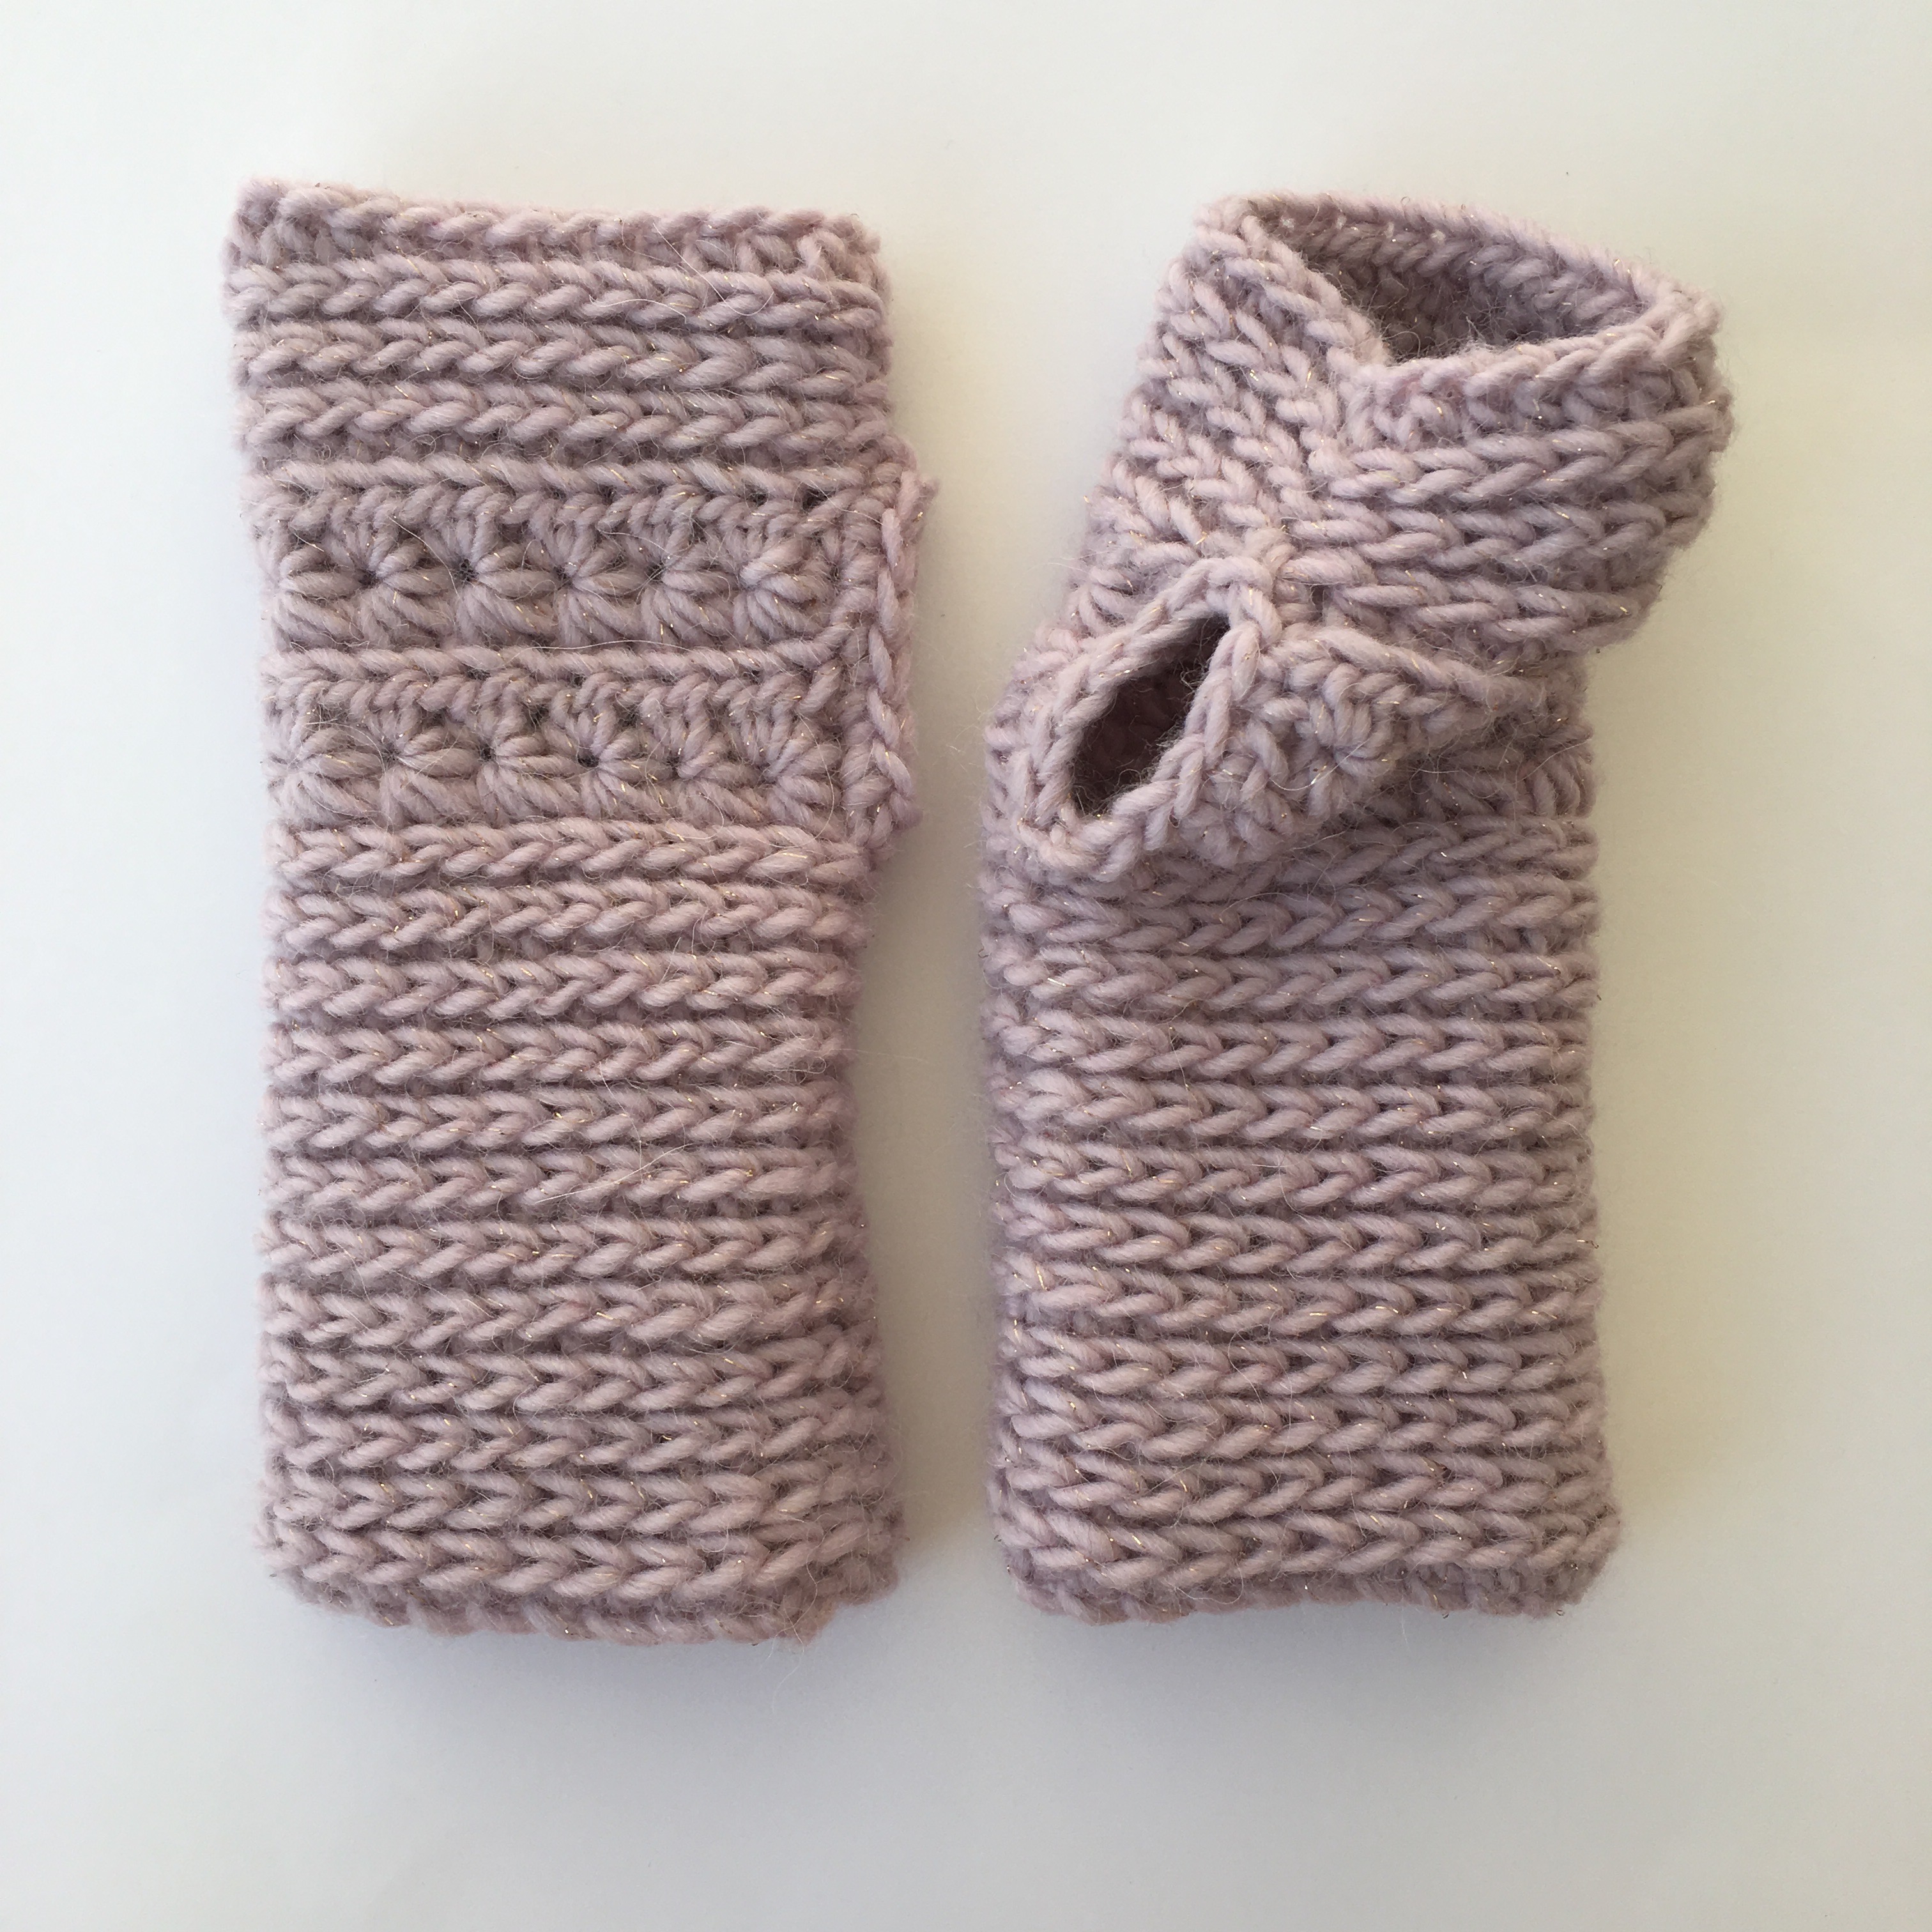 halfdouble crochet